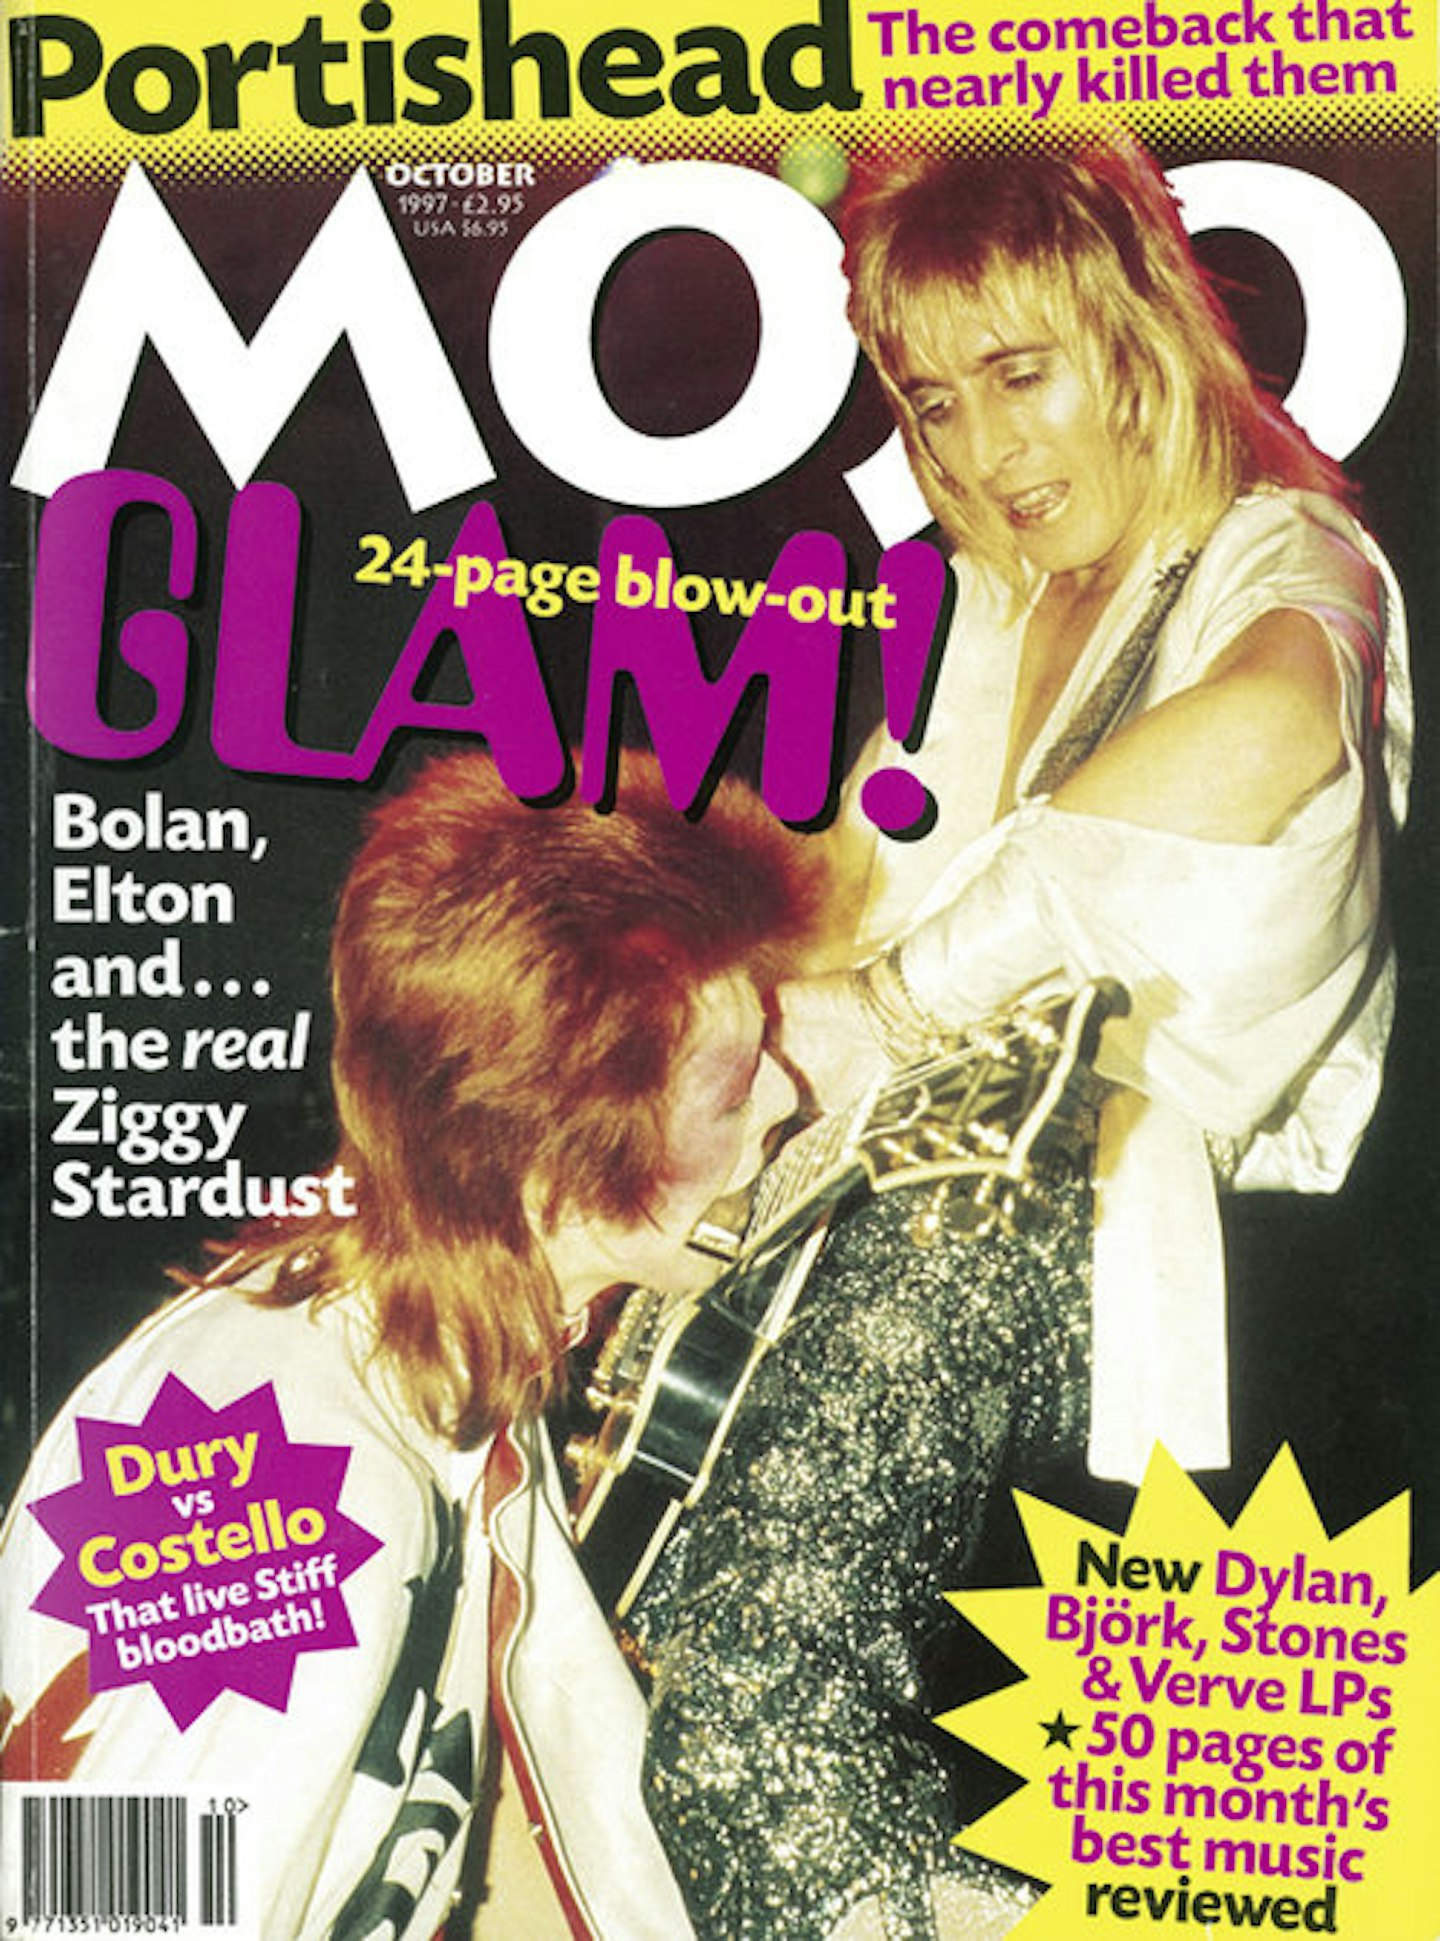 MOJO Issue 47 / October 1997